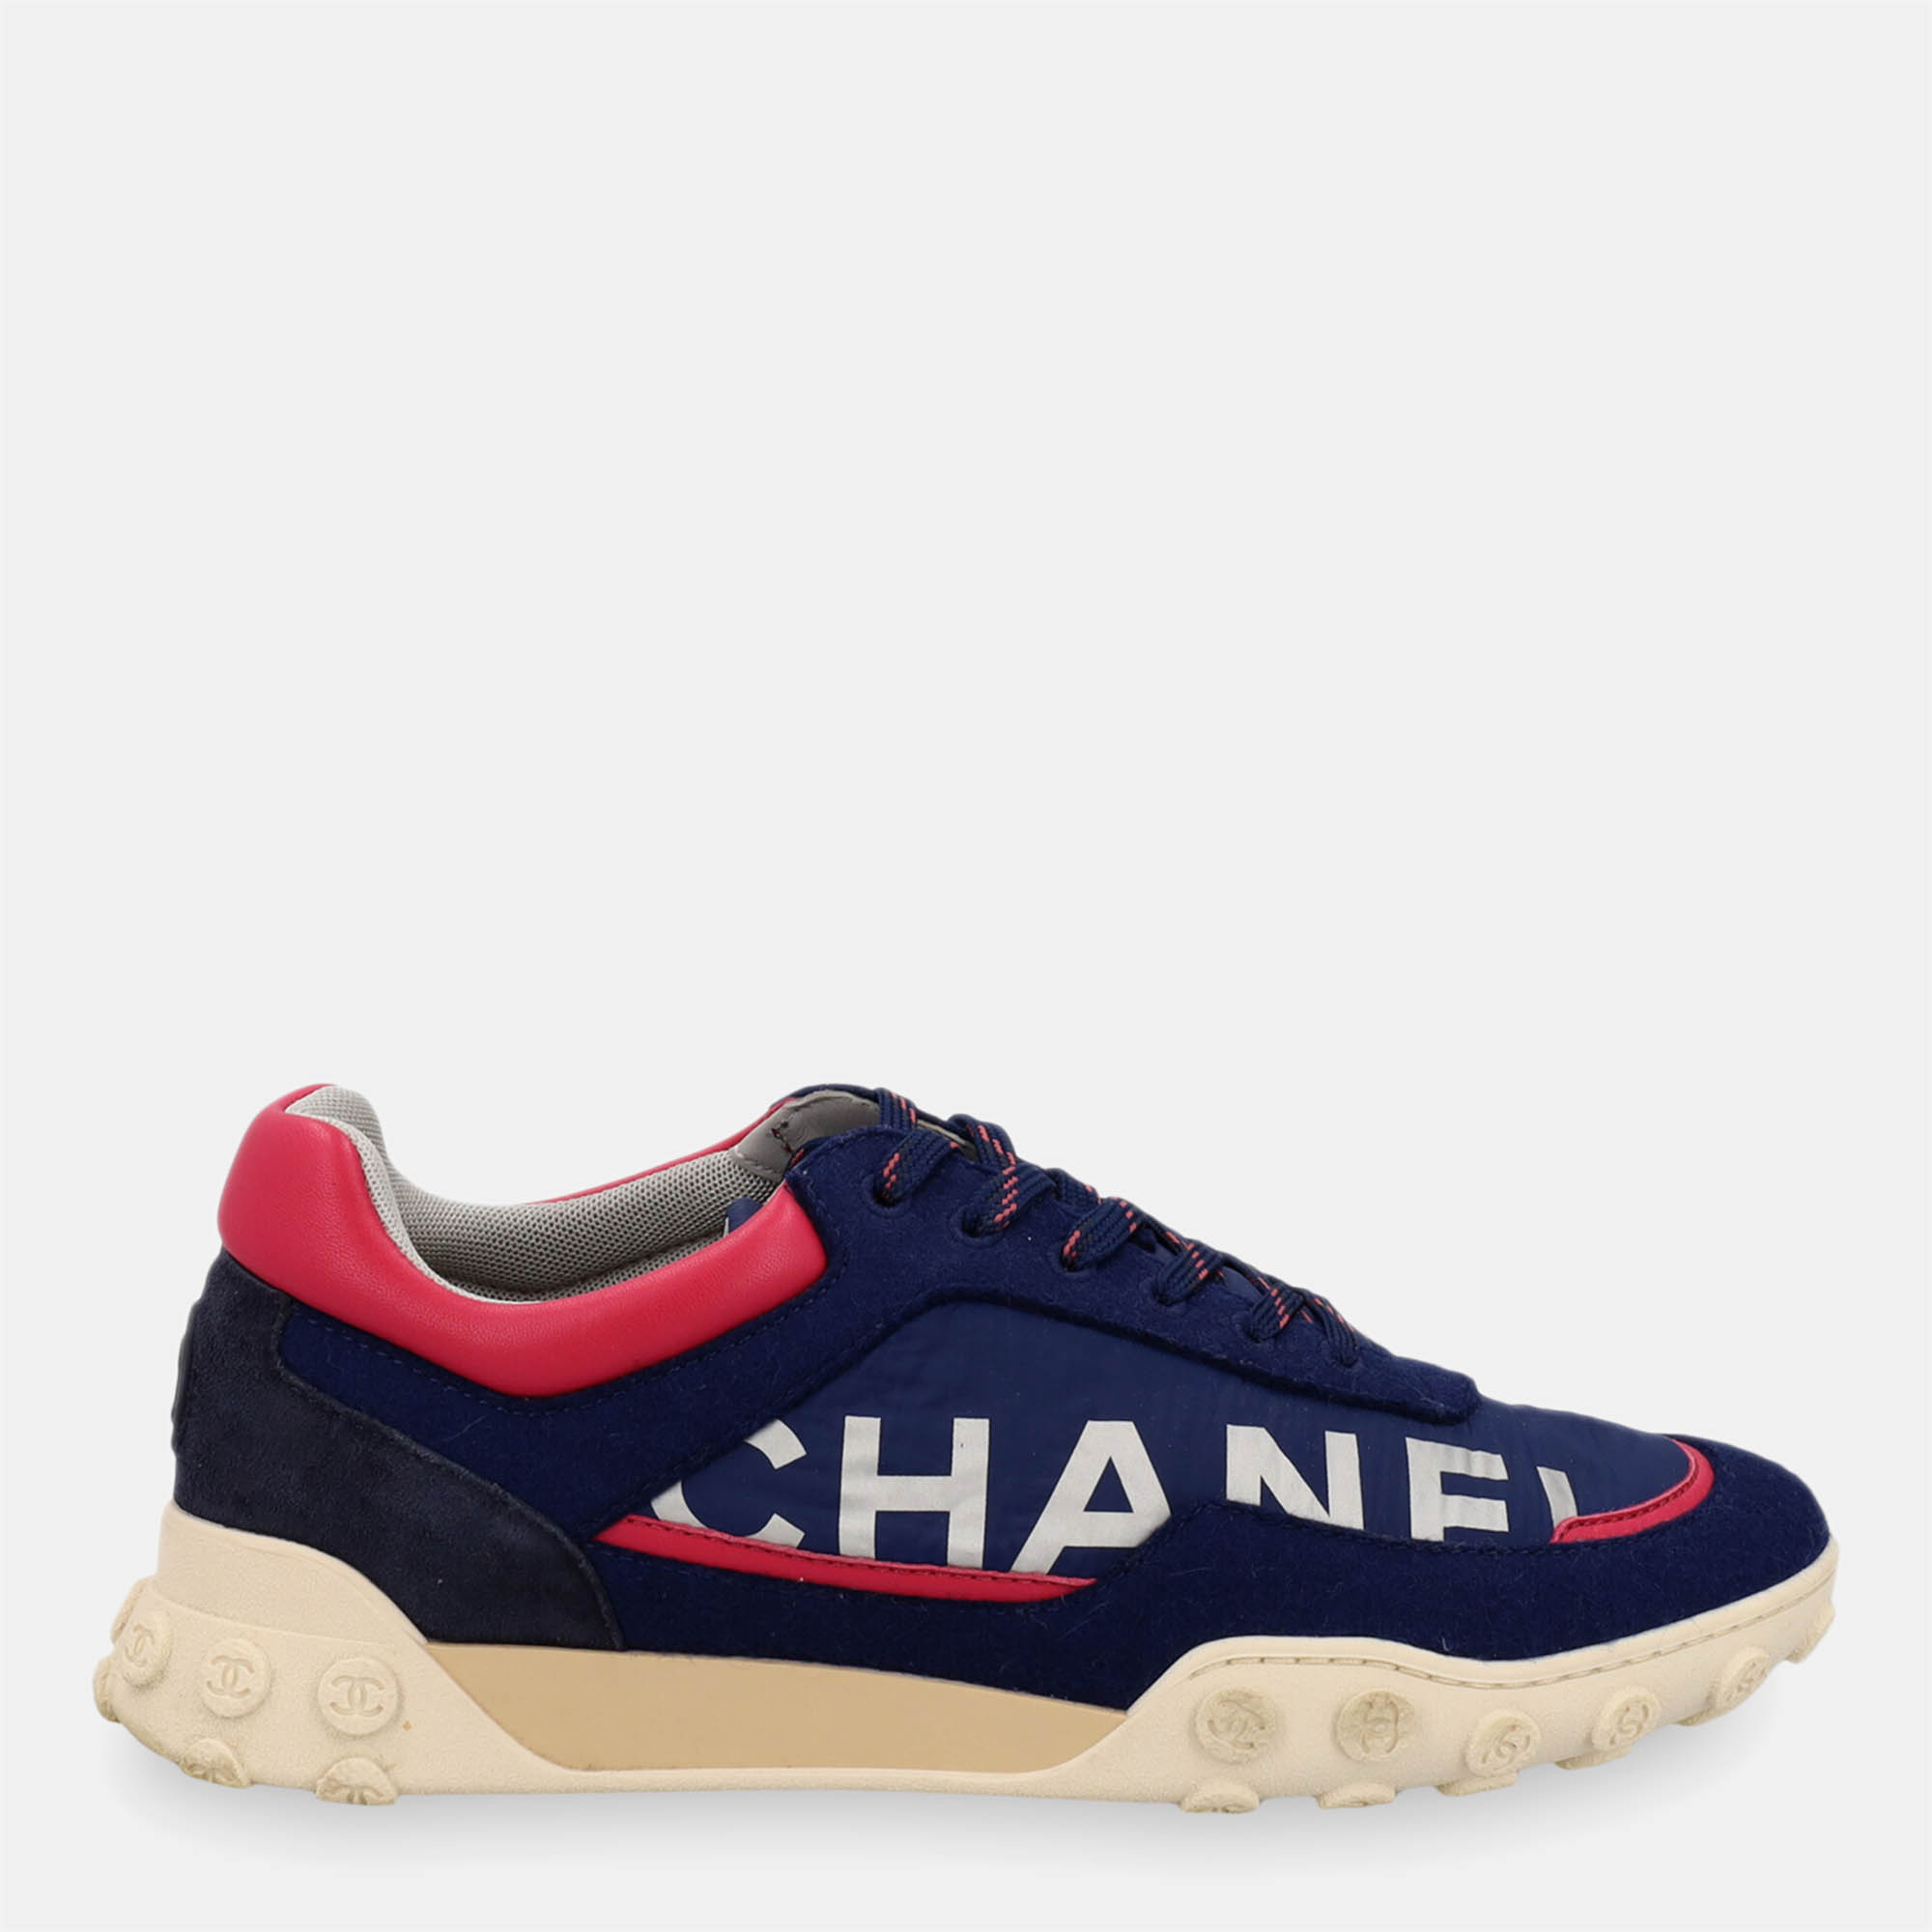 Chanel  Women's Fabric Sneakers - Navy - EU 39.5